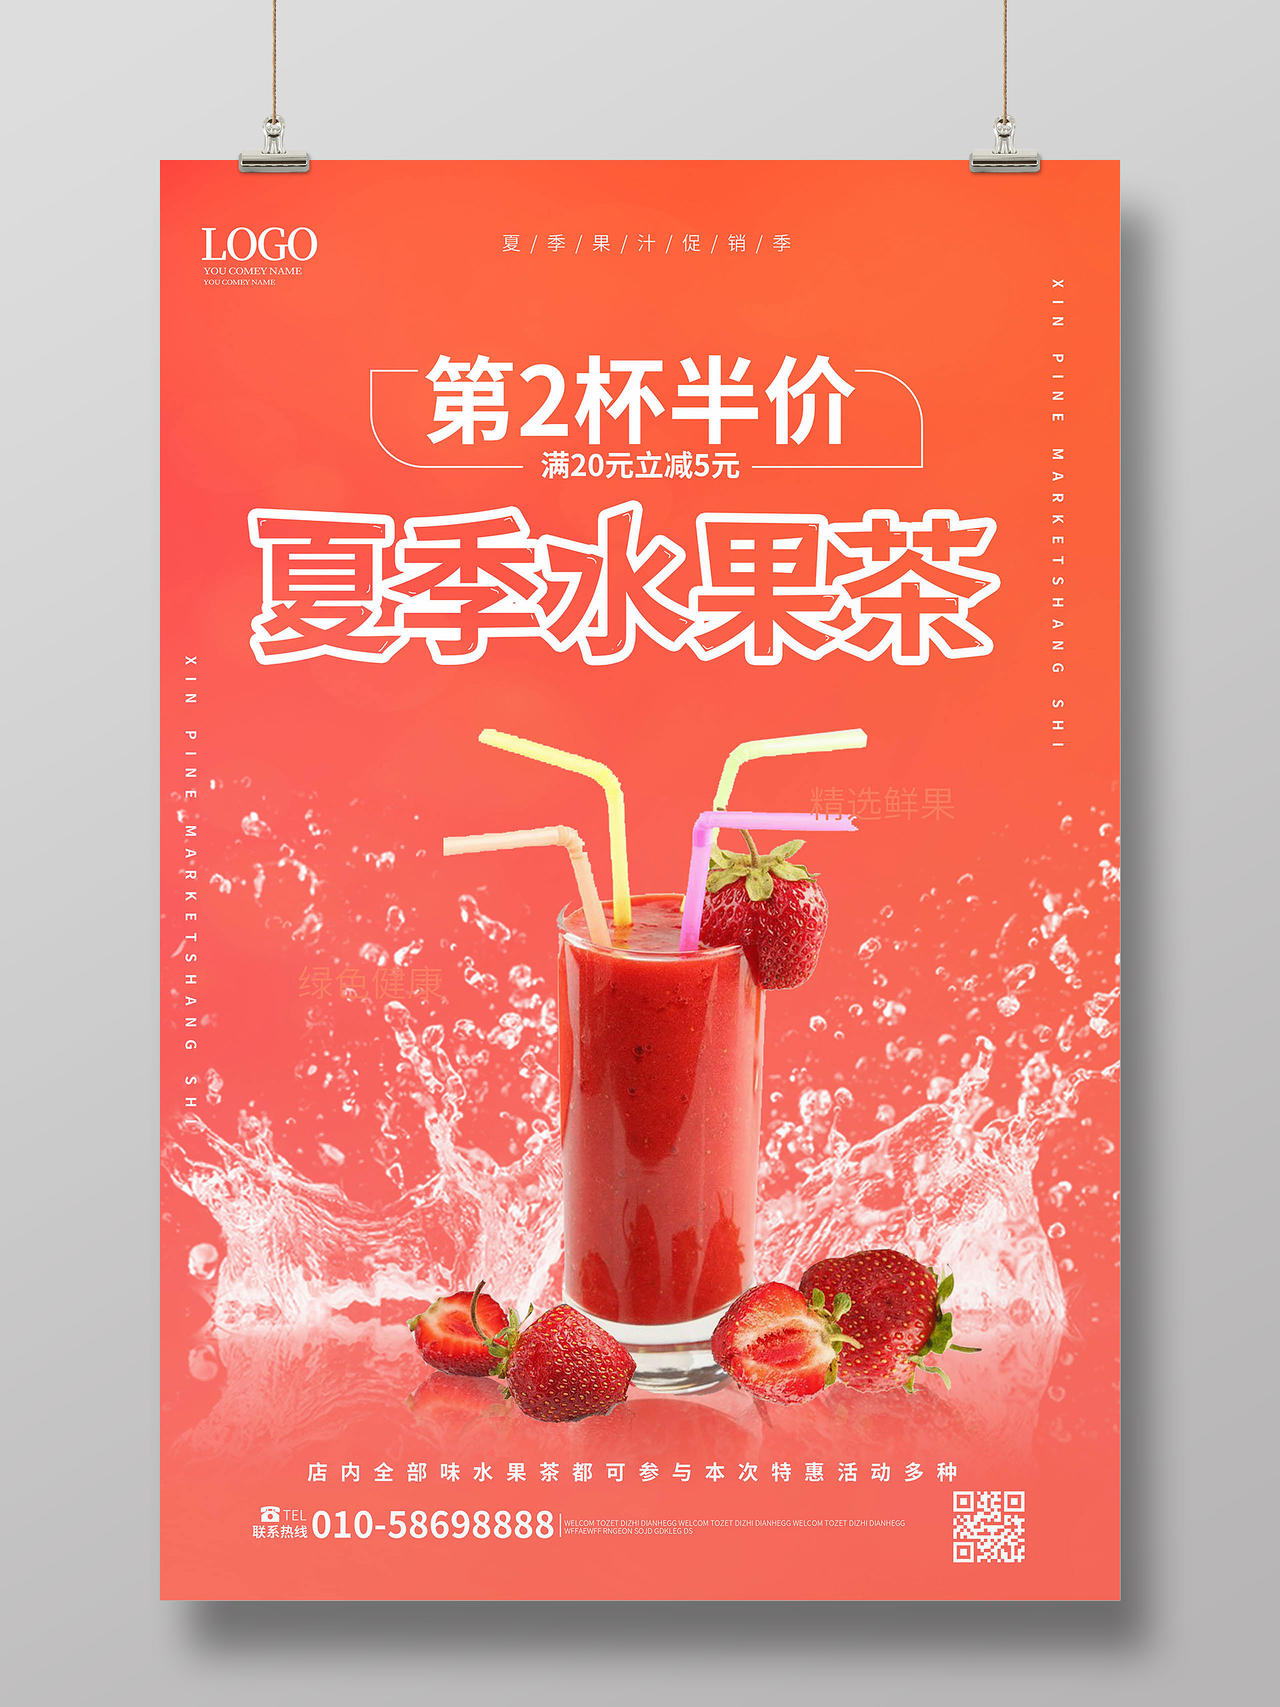 红橙色创意大气夏日水果茶第2杯半价宣传促销海报设计